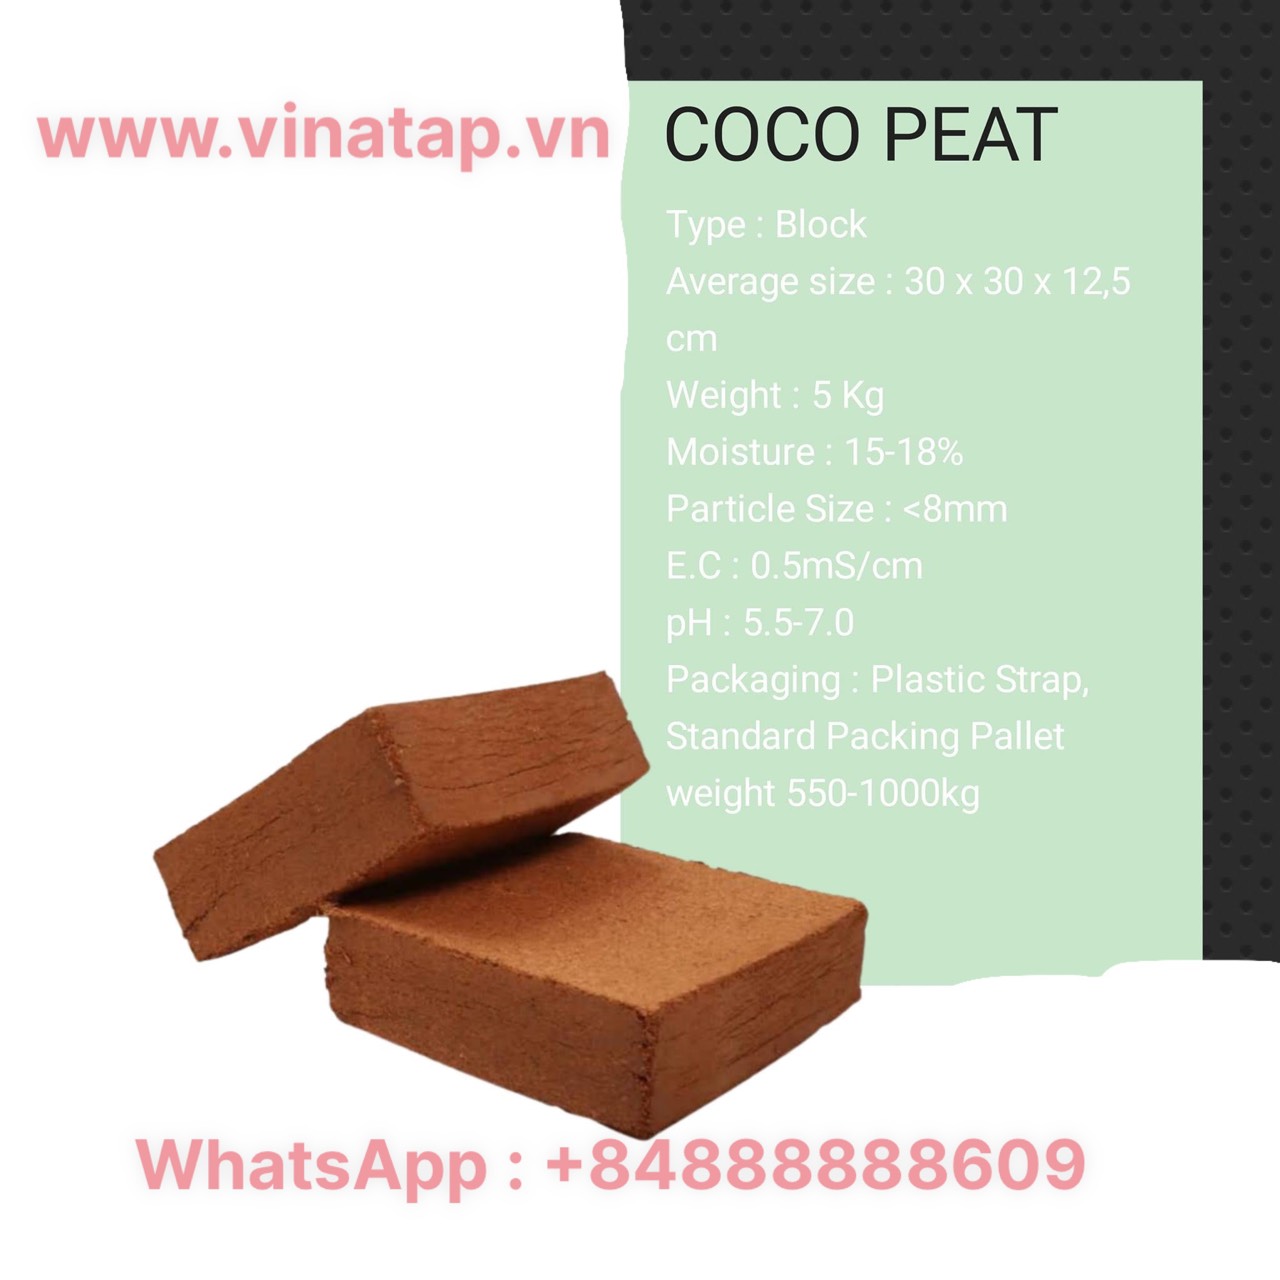 Coco peat block, coir peat block, coco pith block